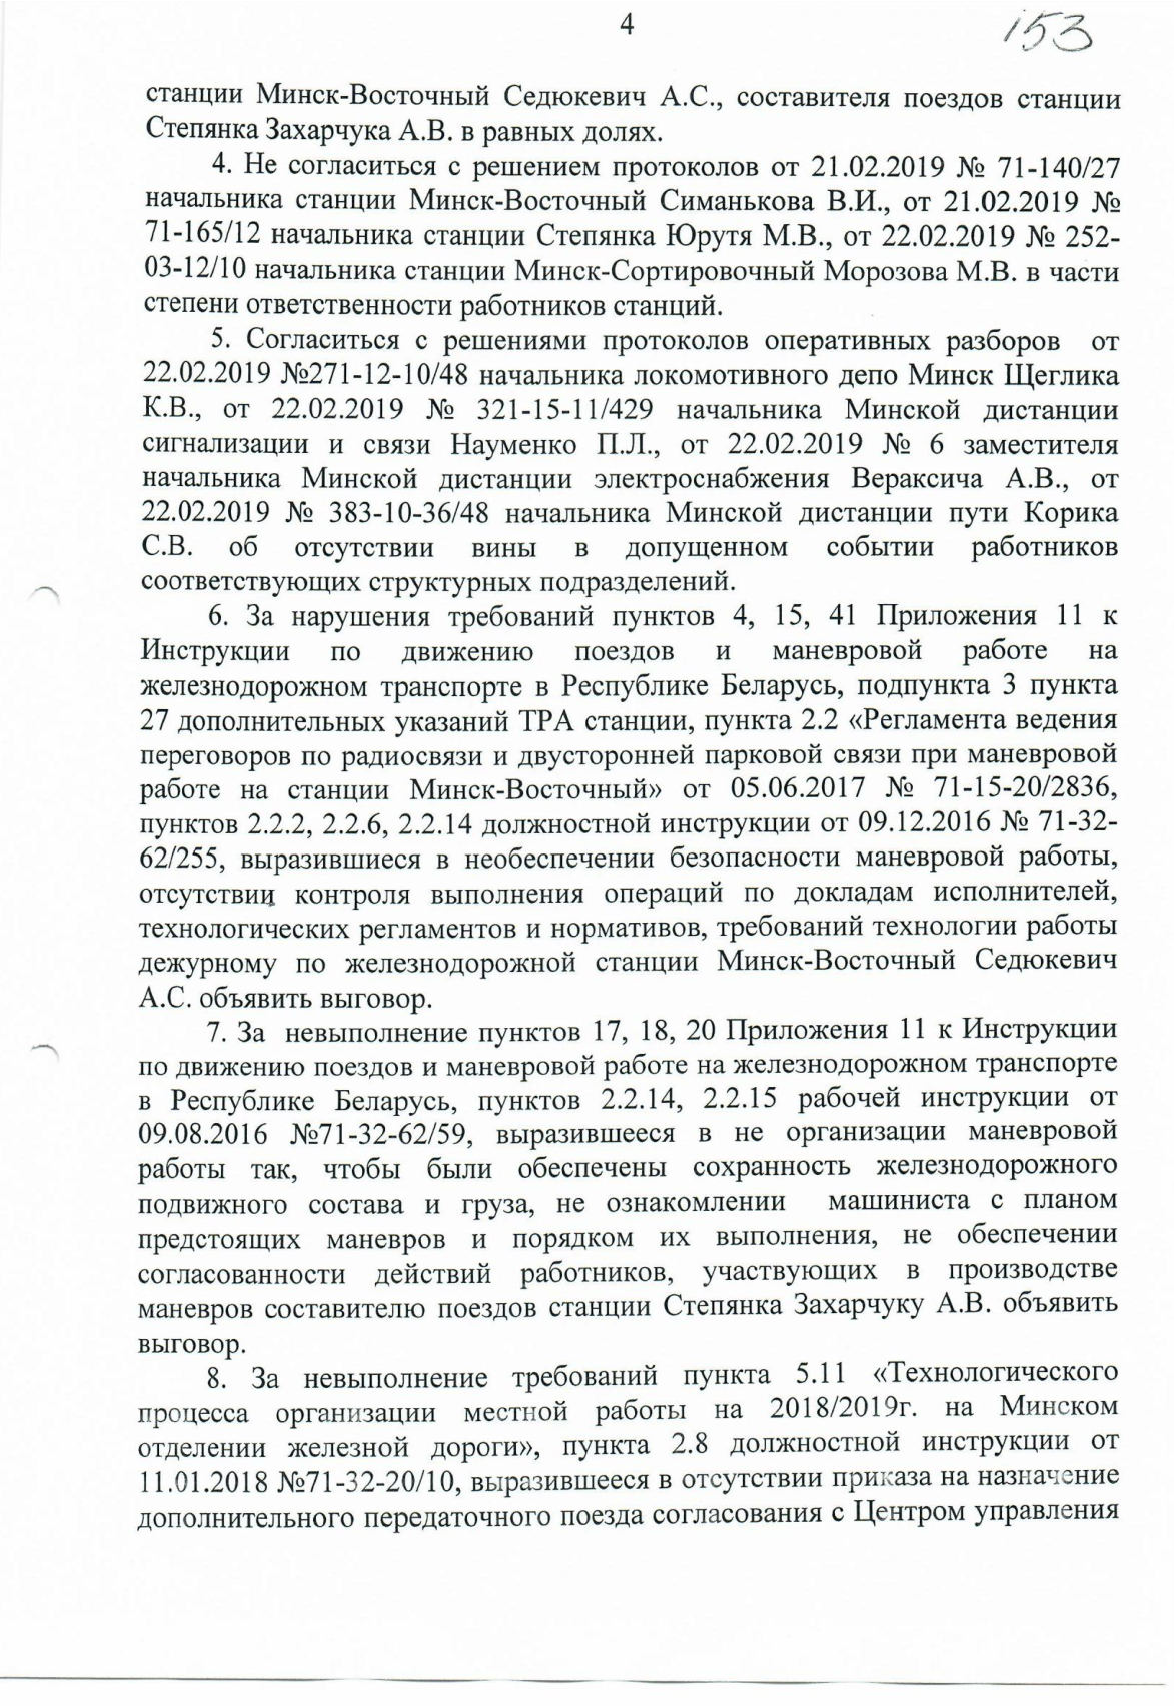 Протокол НОД-1 (Дашкевич) столкновение М-Вост (Страница 4)